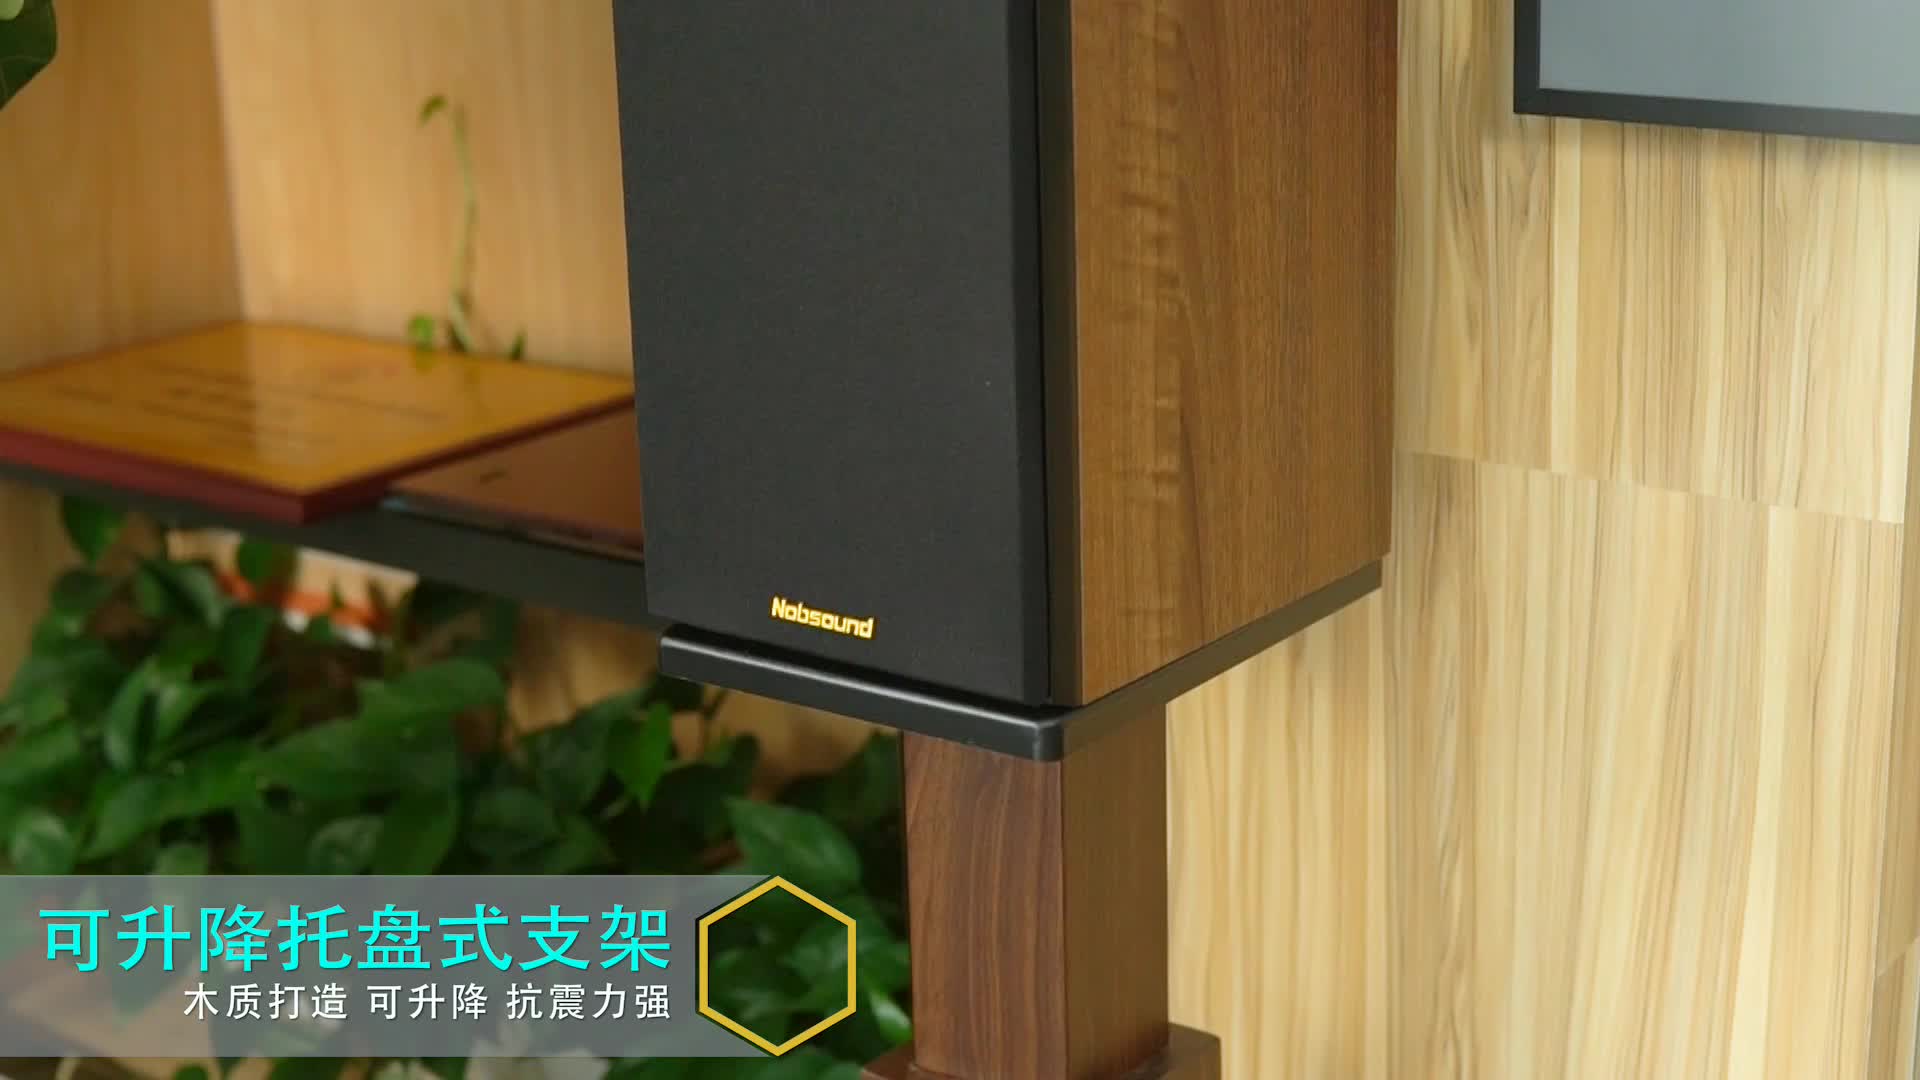 Jiesheng 책장 스피커 삼각대 리프트 홈 시어터 브래킷 컴퓨터 카드 패키지 오디오 랙 나무